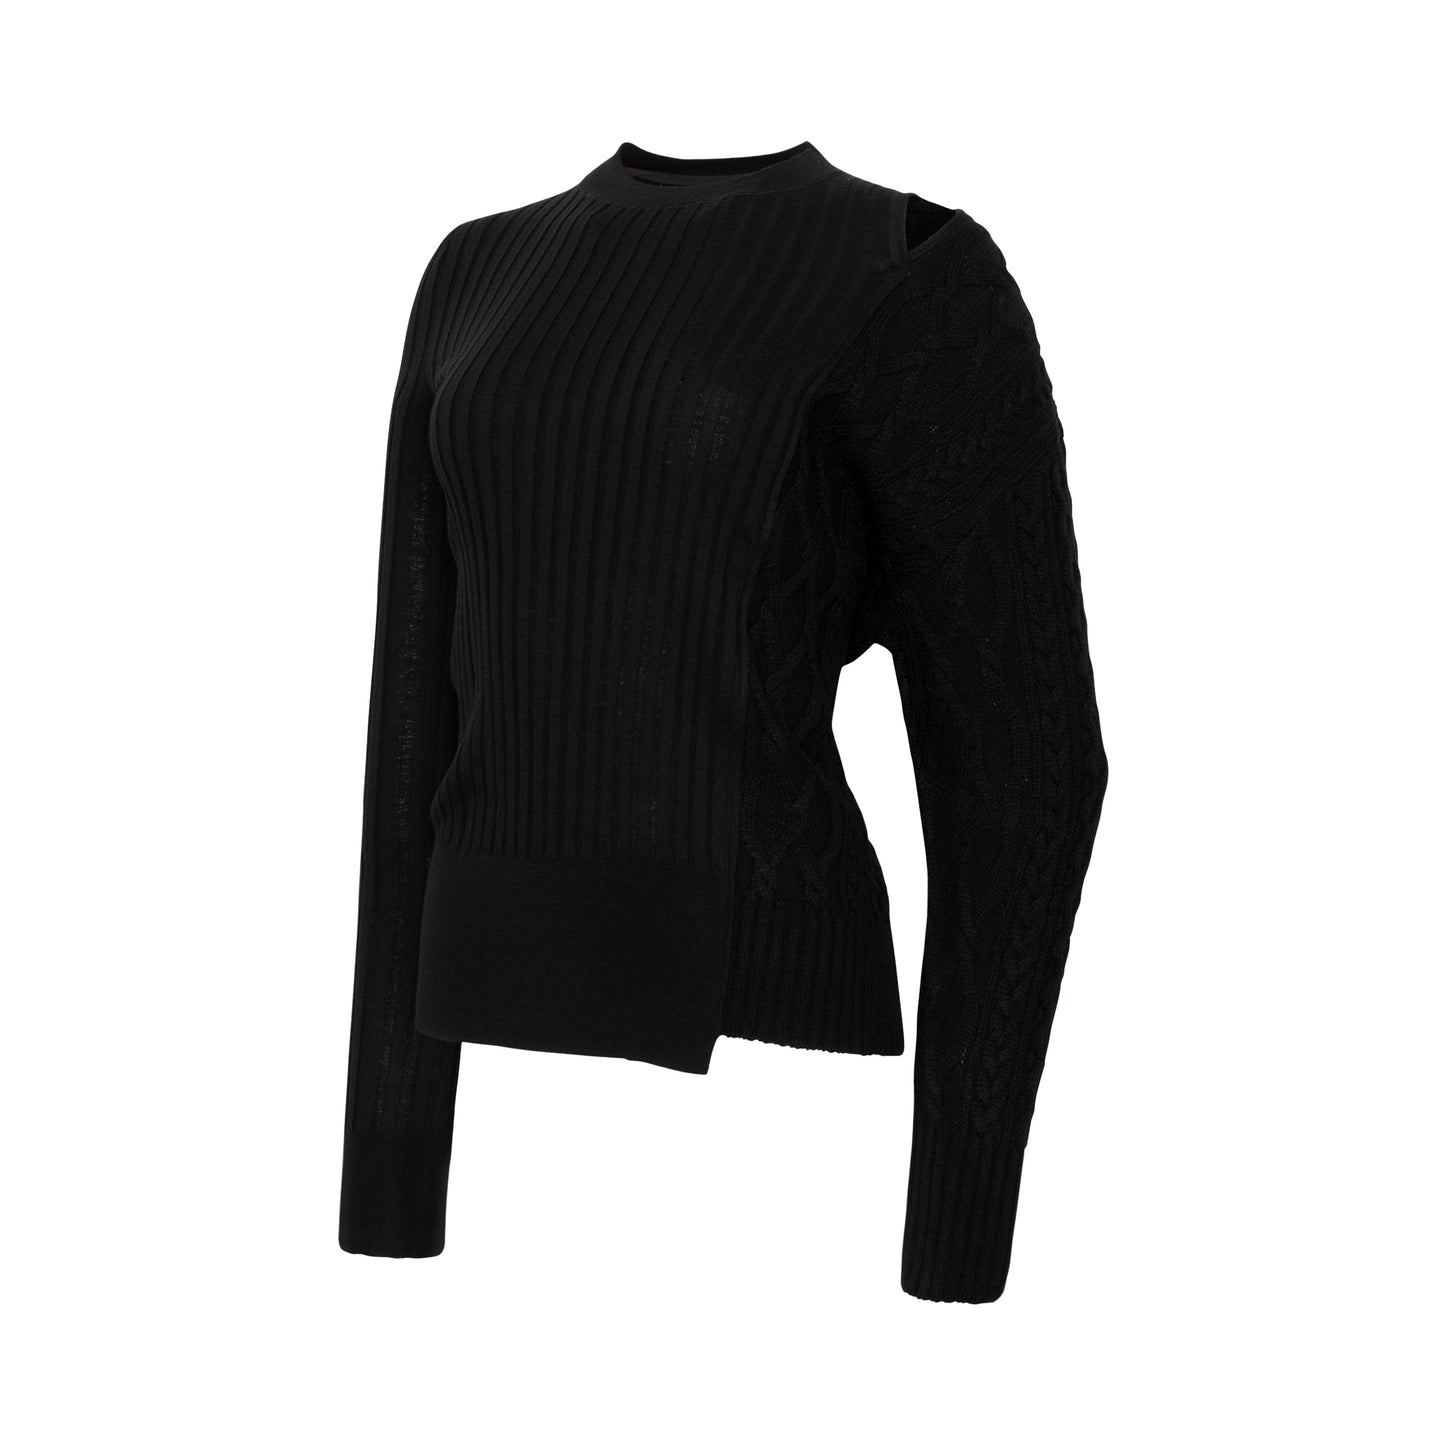 Asymmetric Knit Sweater in Black